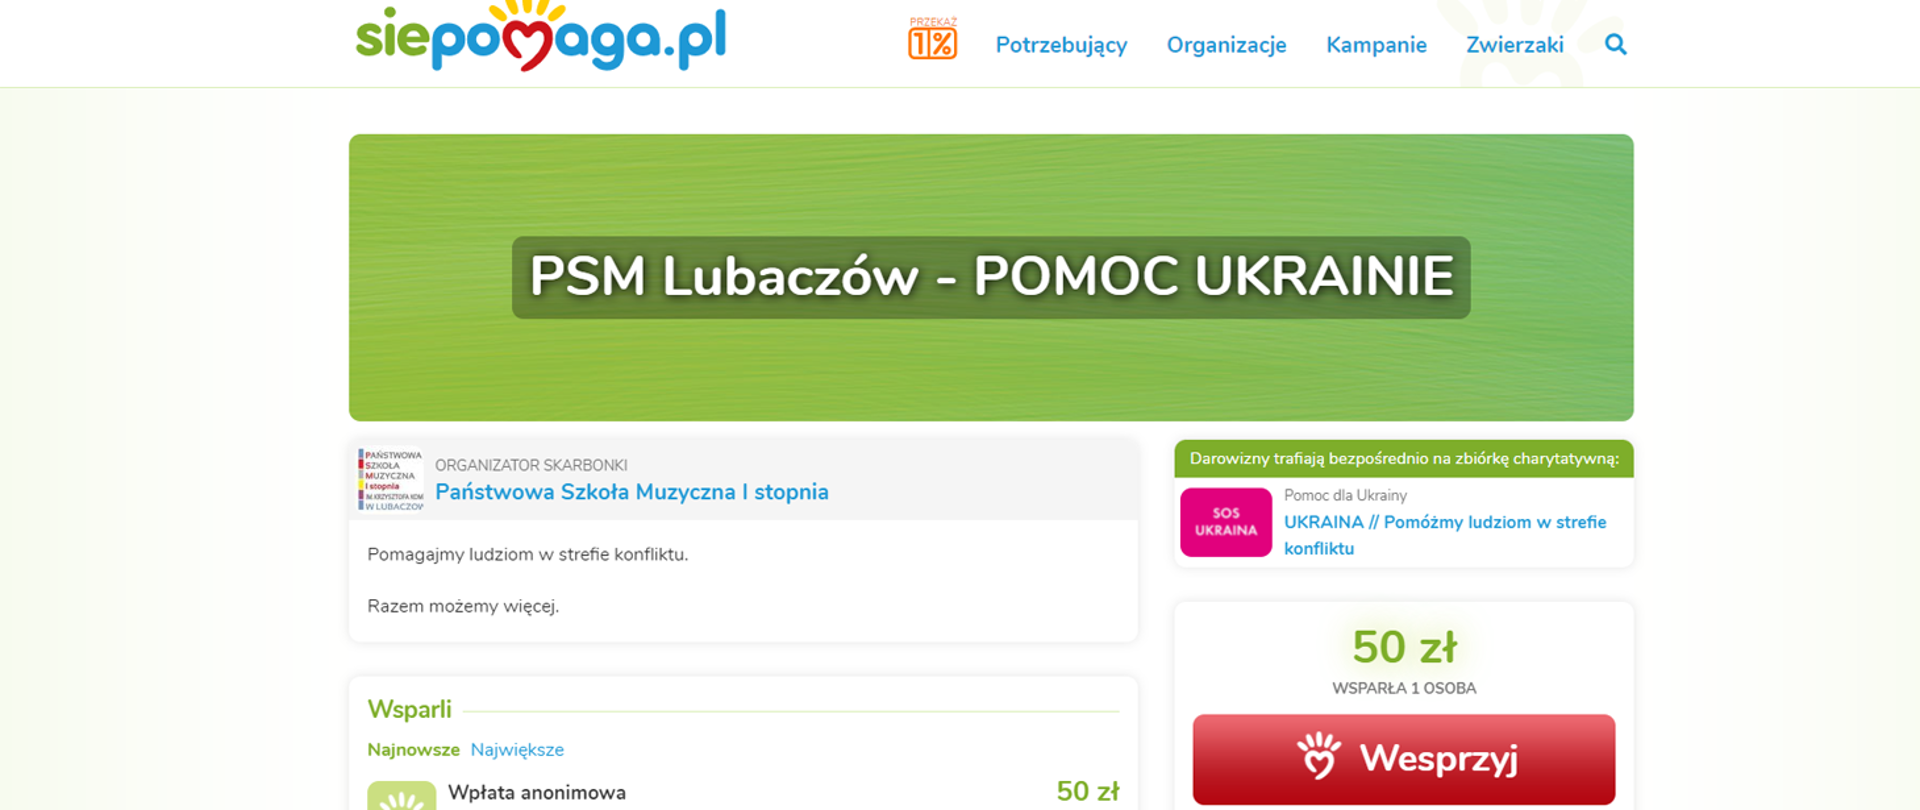 Grafika siepomaga.pl zachęcająca do wpłat z tekstem "PSM Lubaczów - POMOC UKRAINIE"